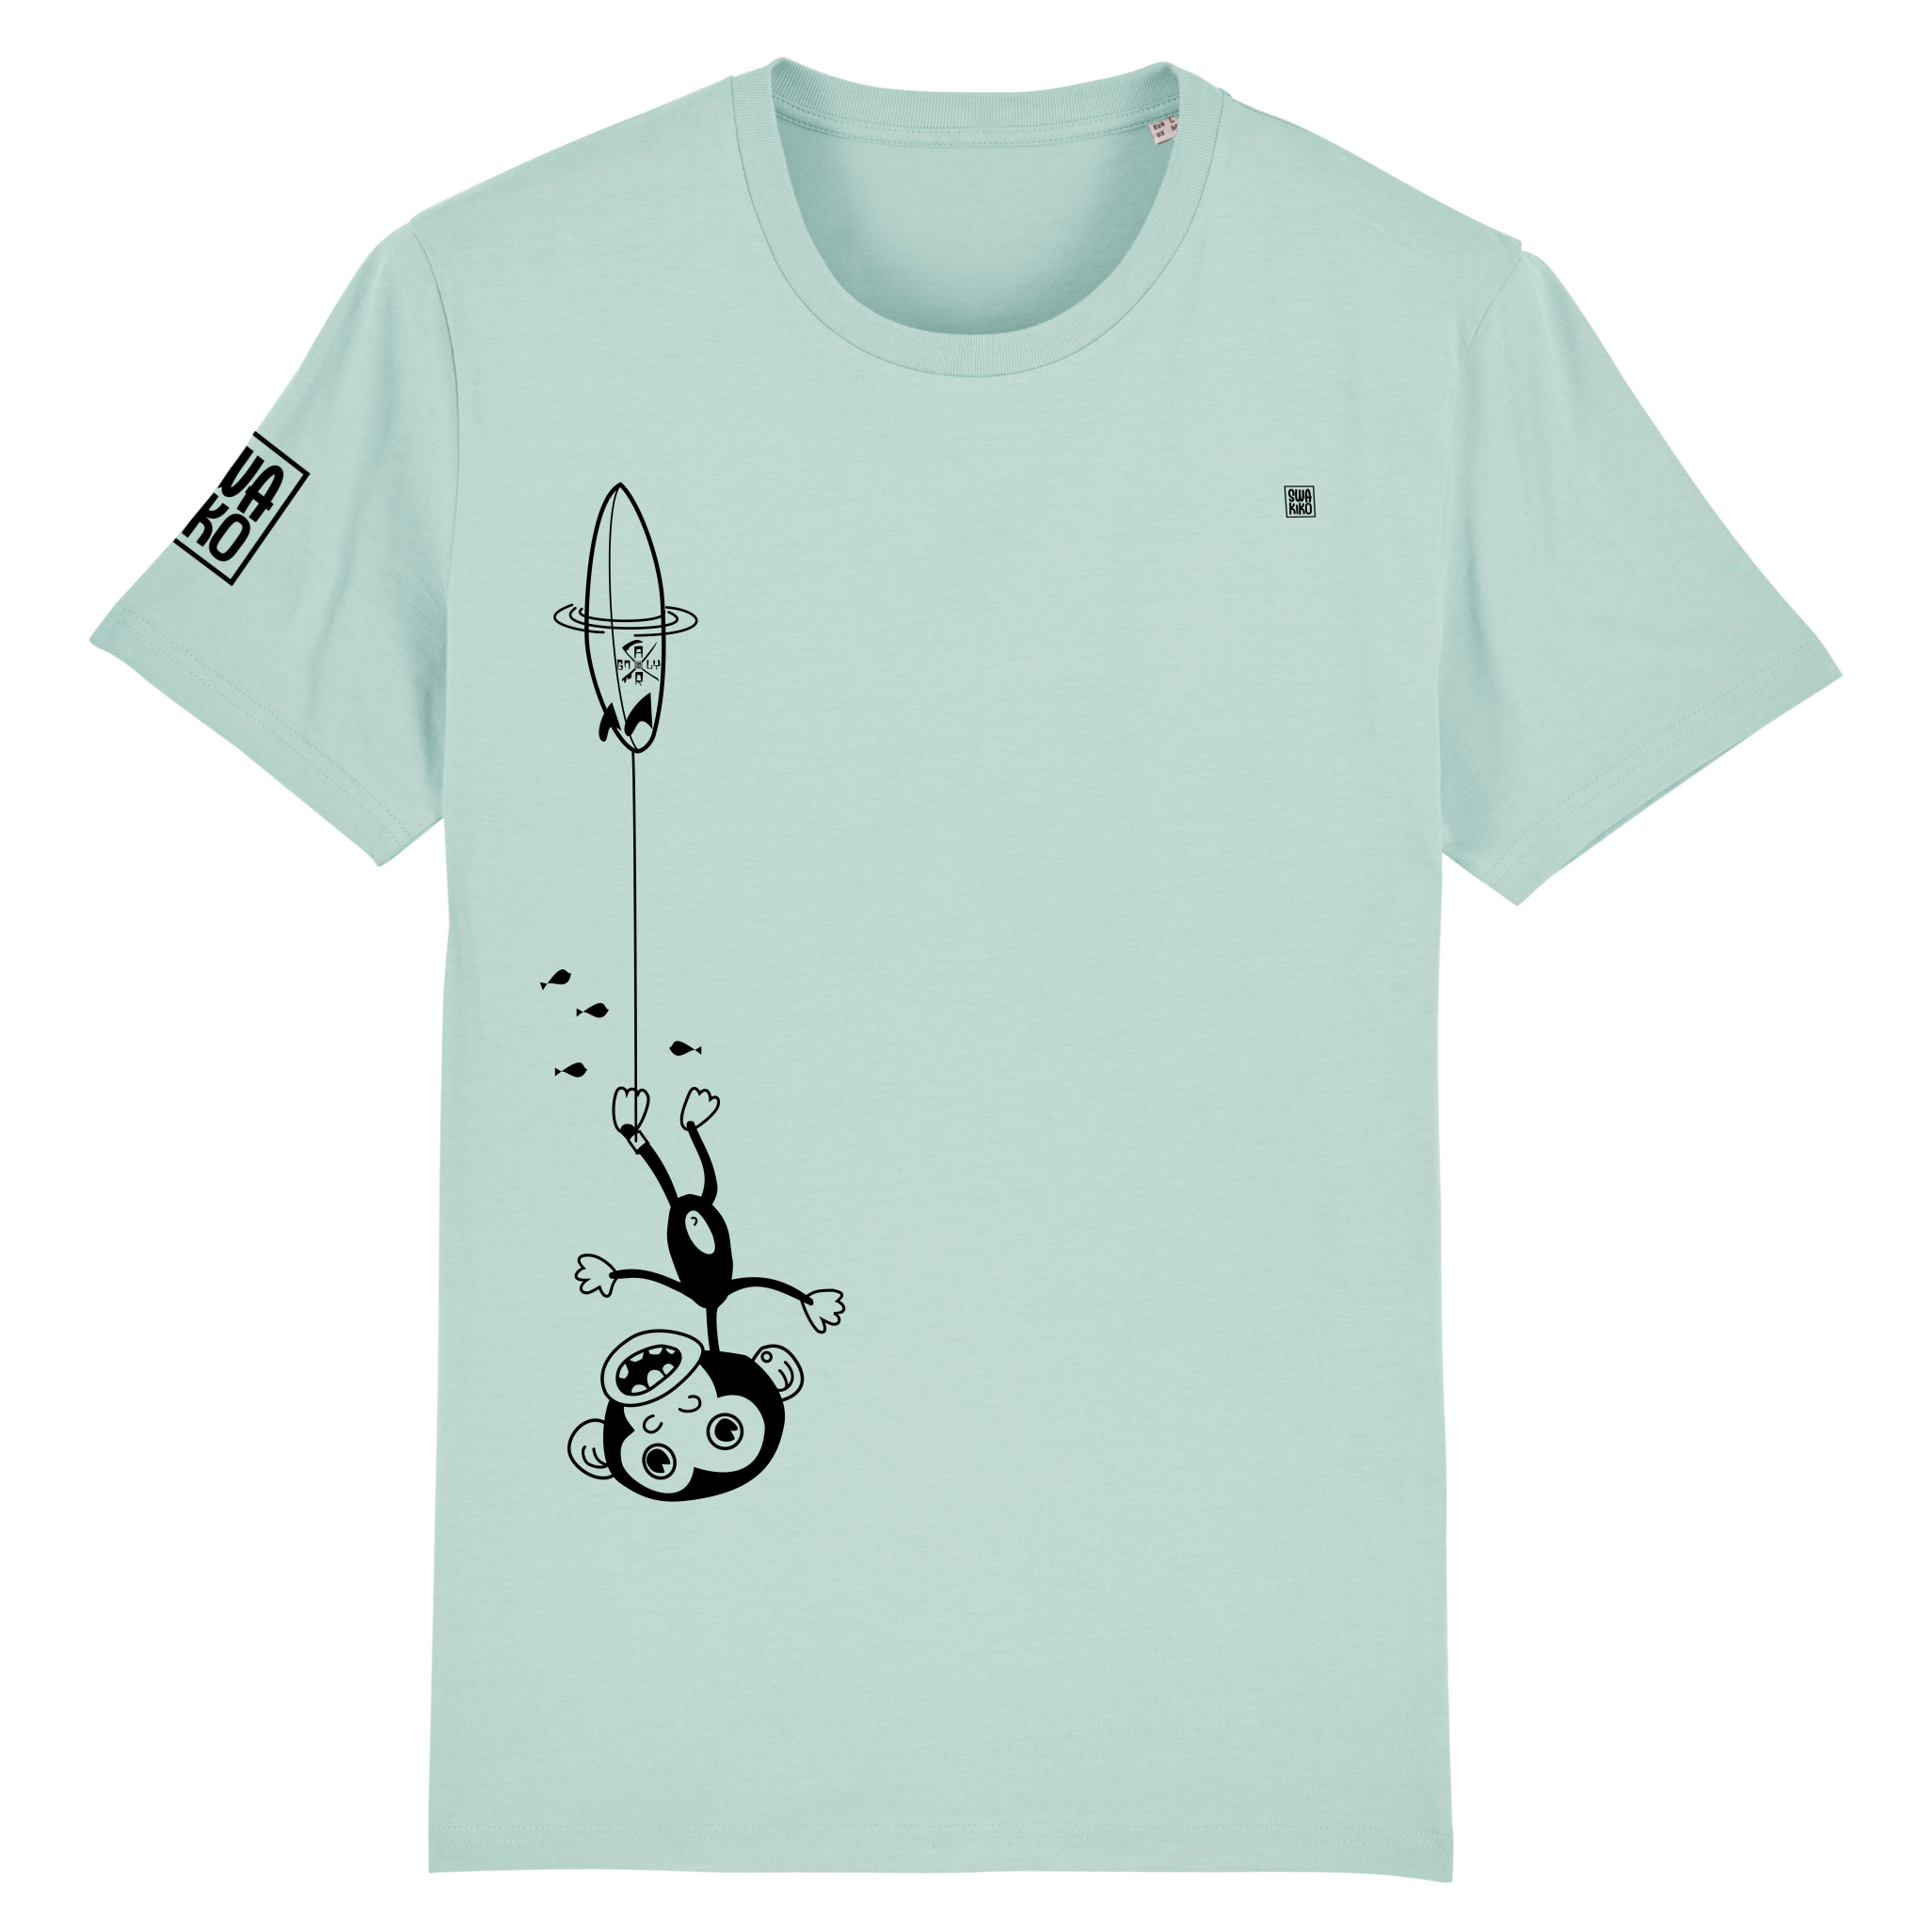 Grappig turquoise surf T-shirt: Ondersteboven hangende aap aan surfboard, gepakt door golf - Hilarisch design 